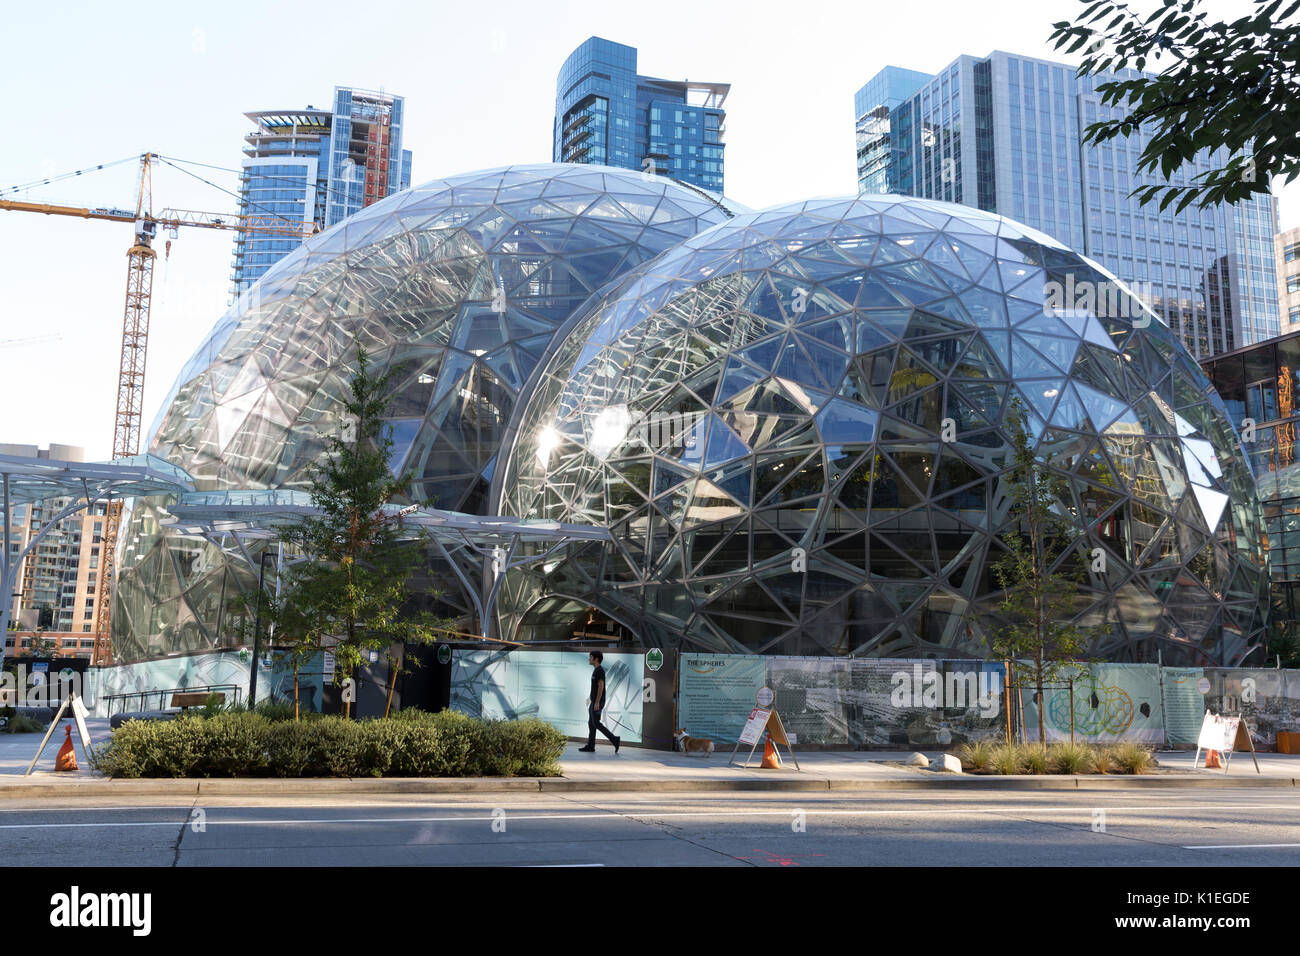 Seattle, Washington: Der Amazon Sphären im Bau an der Amazon Urban Campus  im Belltown Nachbarschaft. Die geodätischen Strukturen, die zusätzliche  Büro-, Einzelhandels- und einen botanischen Garten Haus, Anfang 2018 zu  öffnen. Die